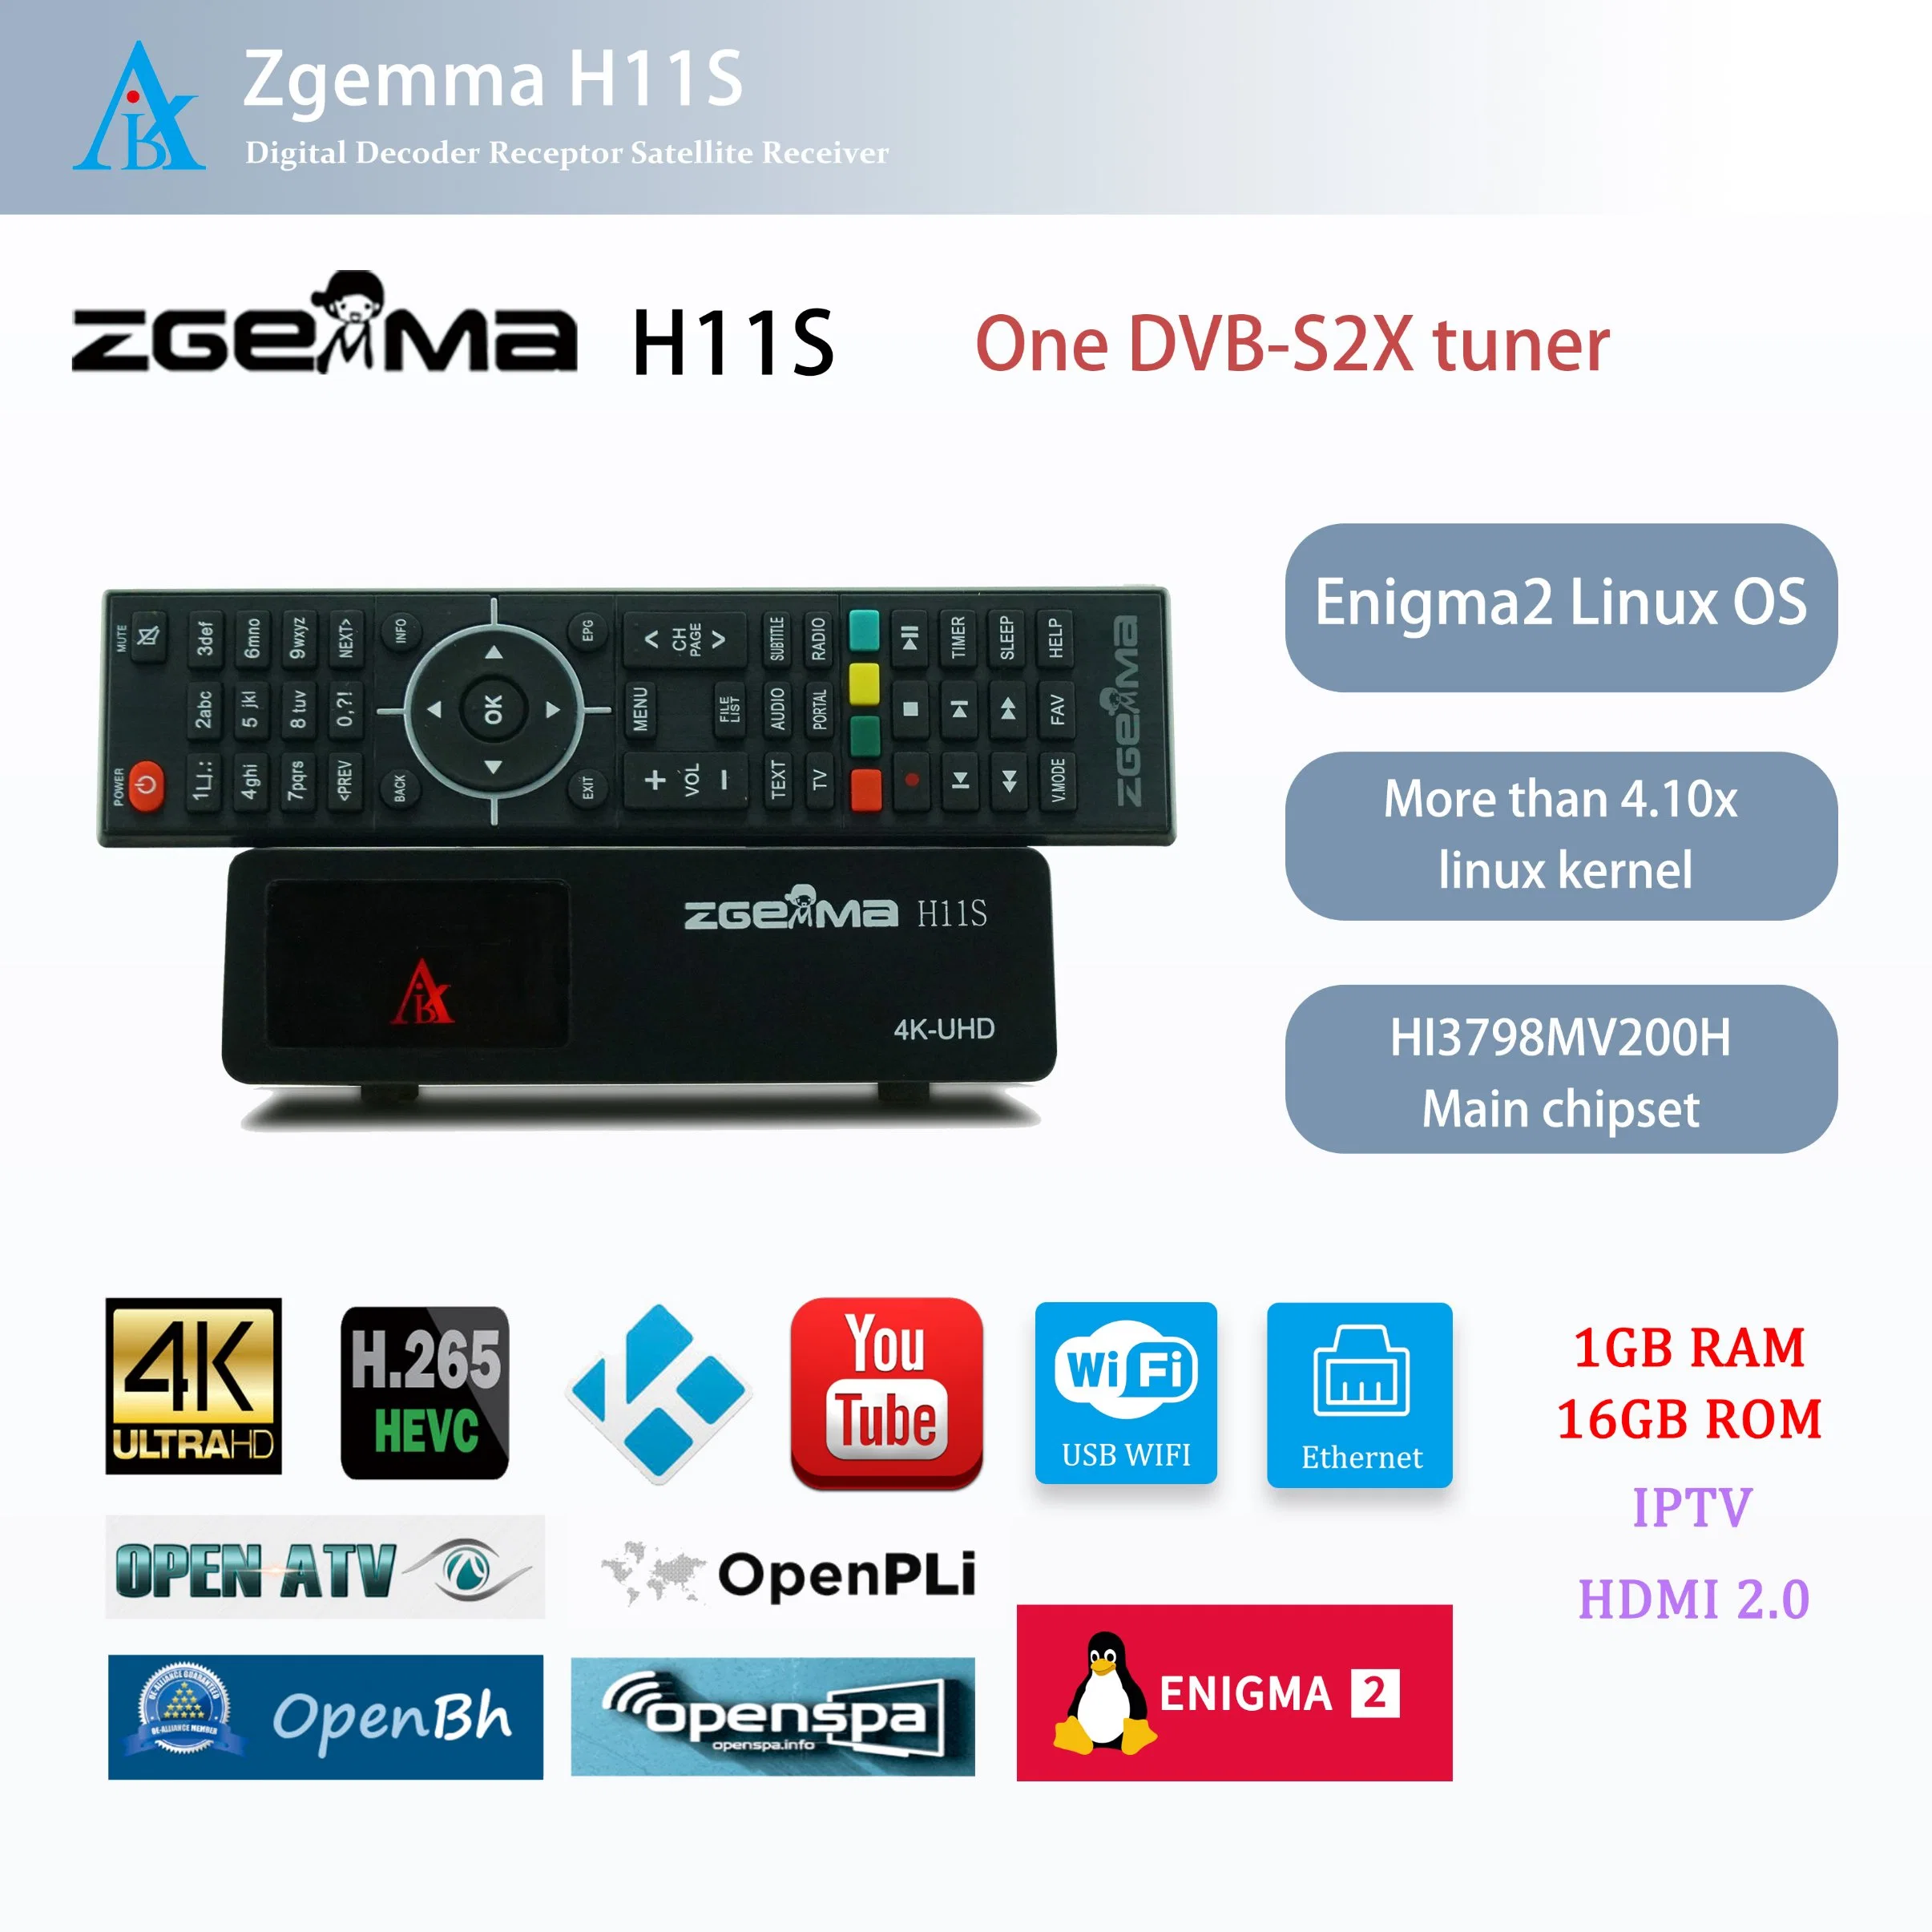 Vanguardia Zgemma H11s los receptores de satélite - Enigma2 el sistema operativo Linux, uno de DVB-S2X, sintonizador de TV el descodificador